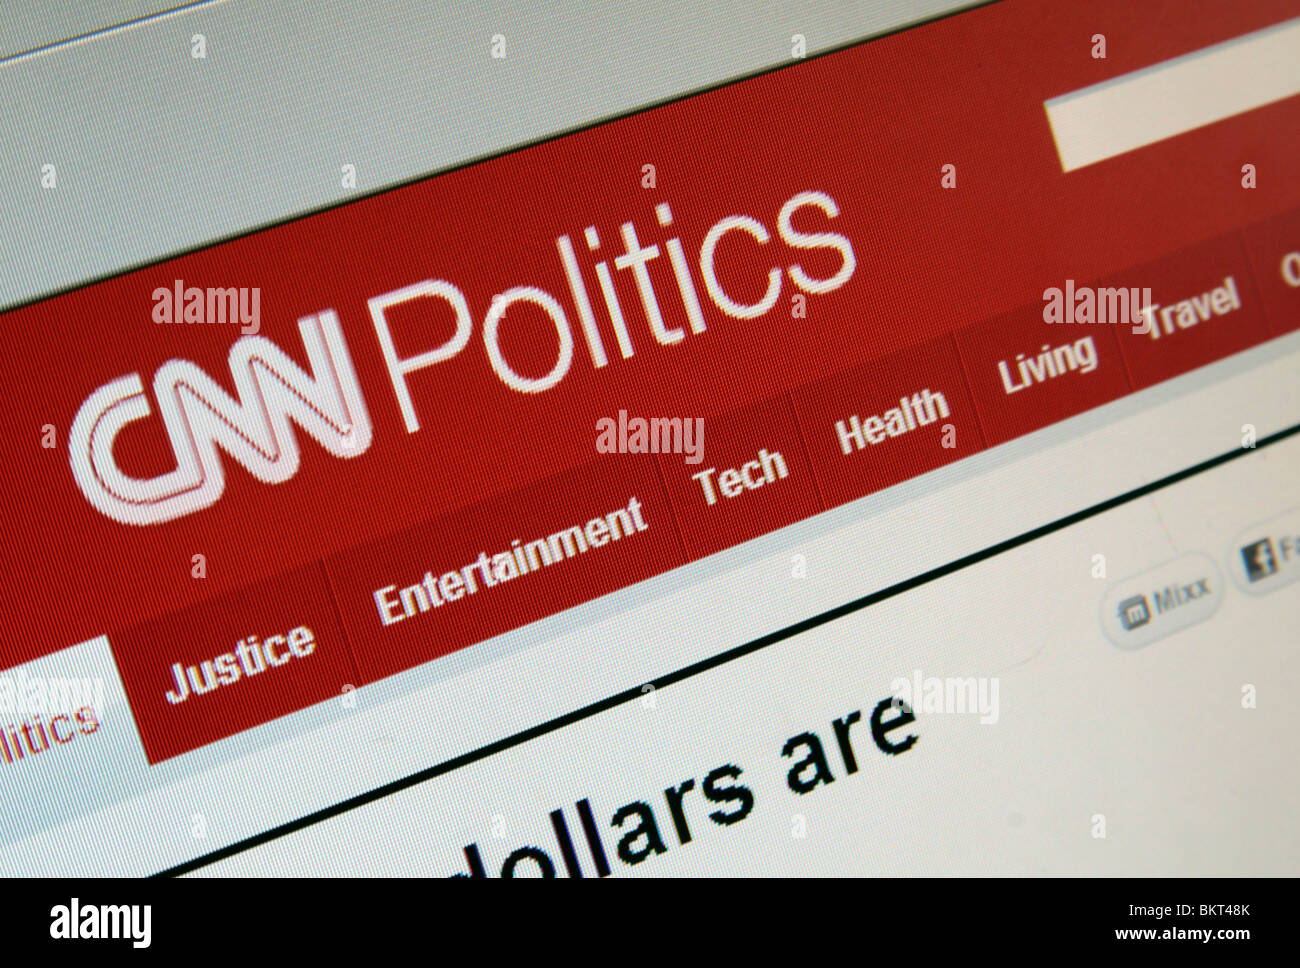 Una parte inclinata o close up screen shot della pagina Politica del CNN sito web. Aprile 2010 Foto Stock